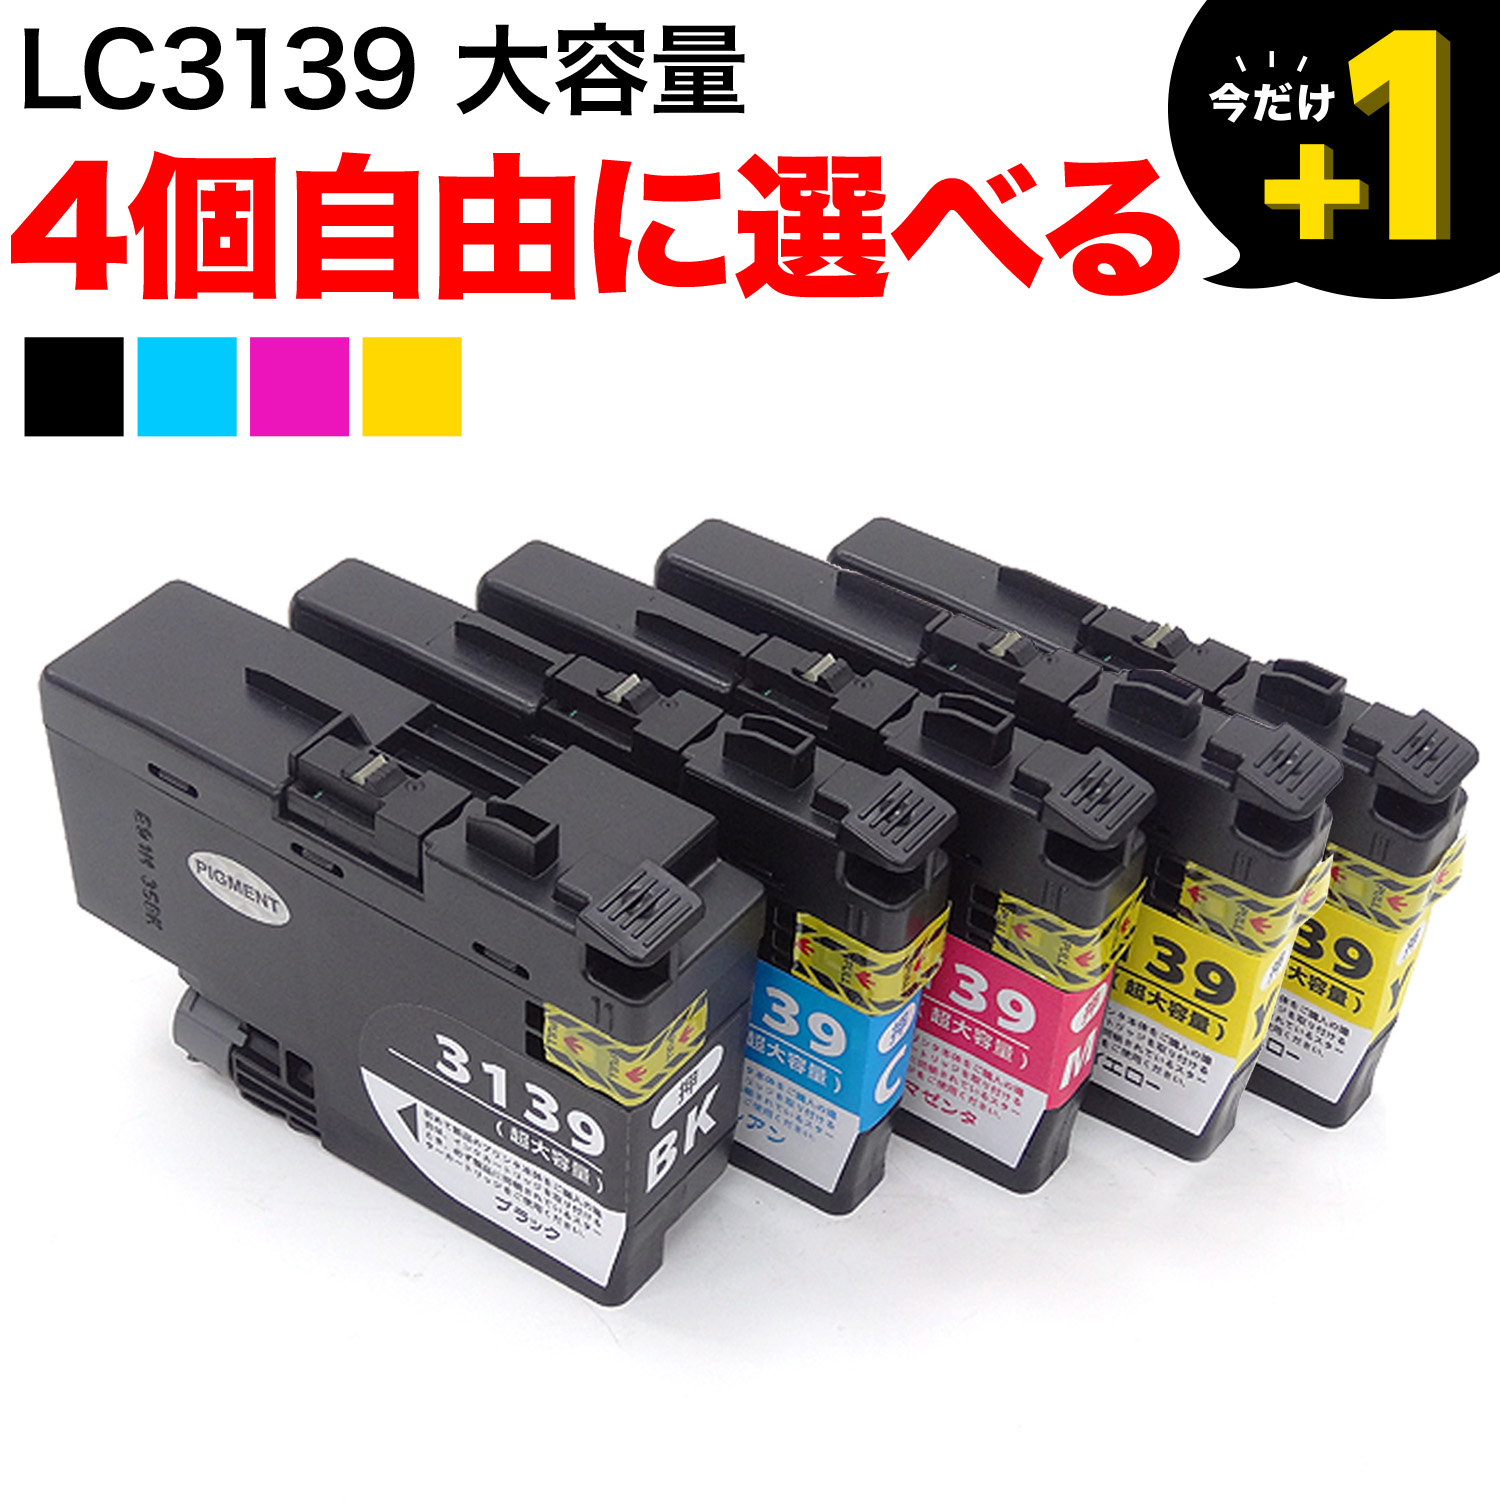 LC3139 ブラザー用 互換インクカートリッジ 自由選択4個セット フリーチョイス【送料無料】 選べる4個セット（品番：QR-FC-LC3139-4 ）詳細情報【こまもの本舗】